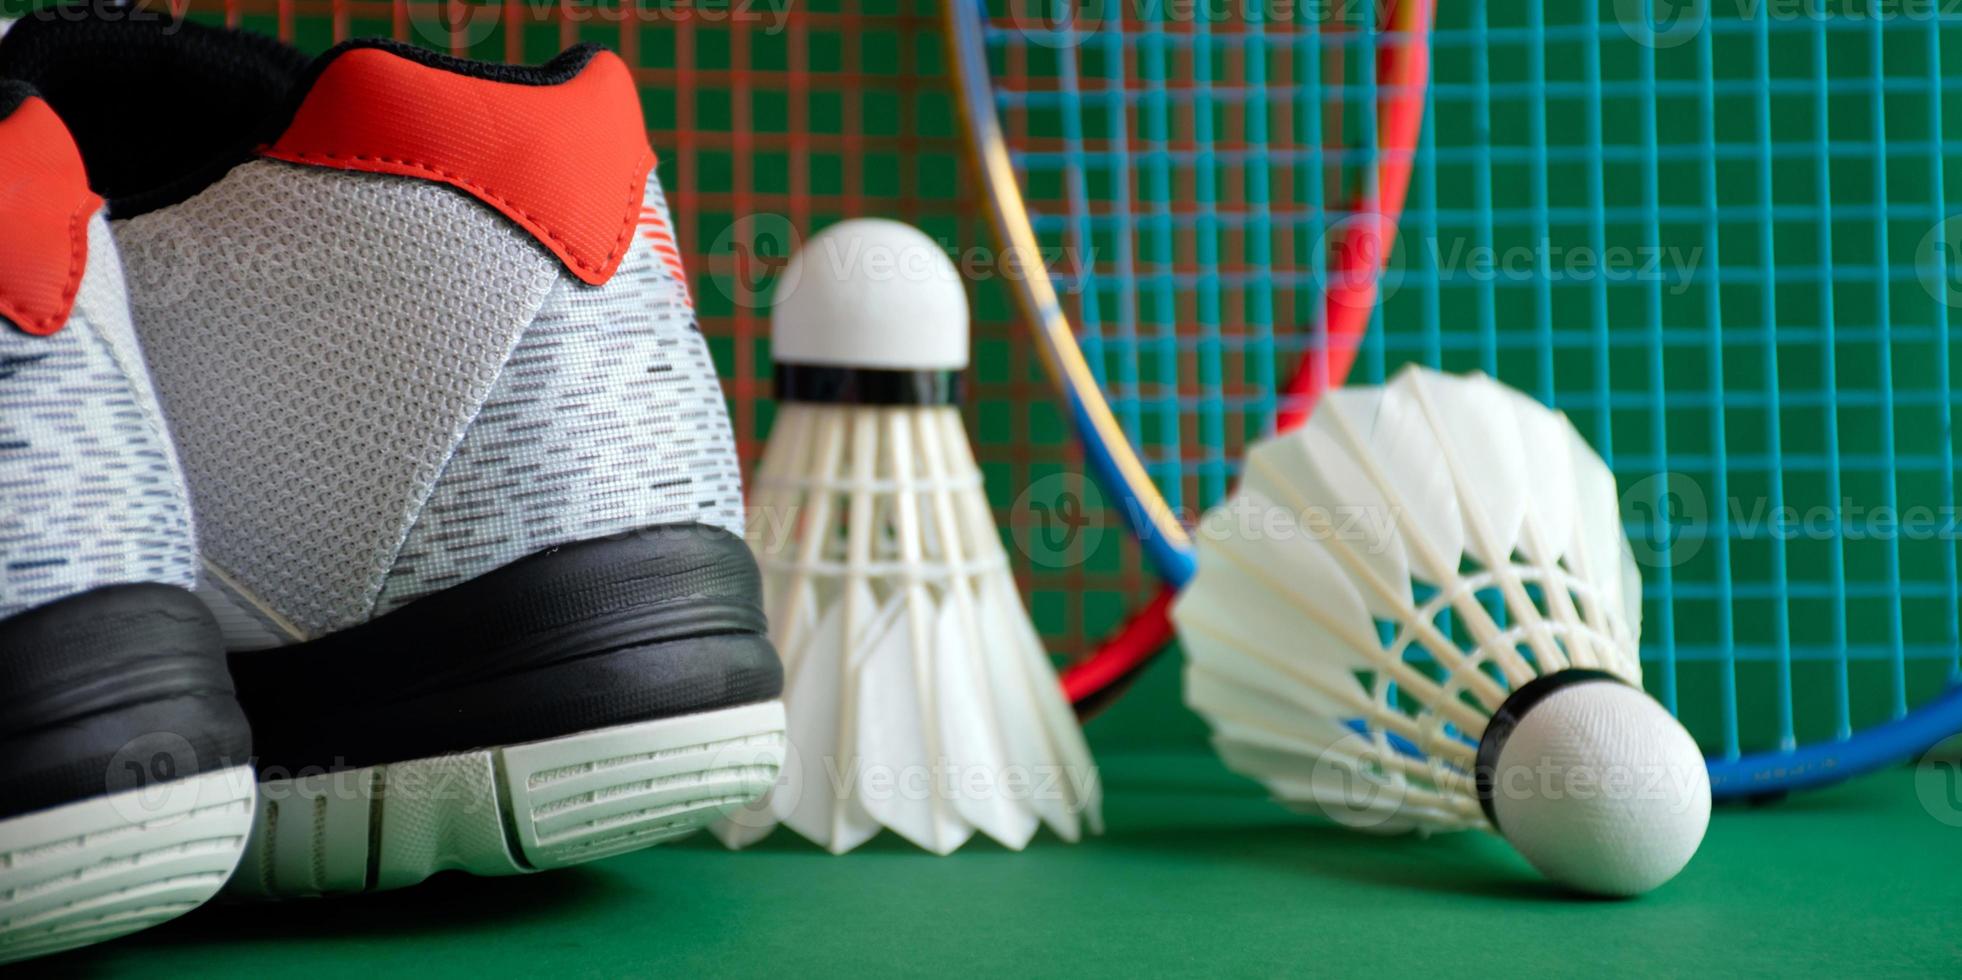 badmintonsportuitrusting op groene vloer van badmintonveldshuttles, rackets, schoenen, selectieve focus op shuttles, badmintonsportliefhebber over het hele wereldconcept. foto